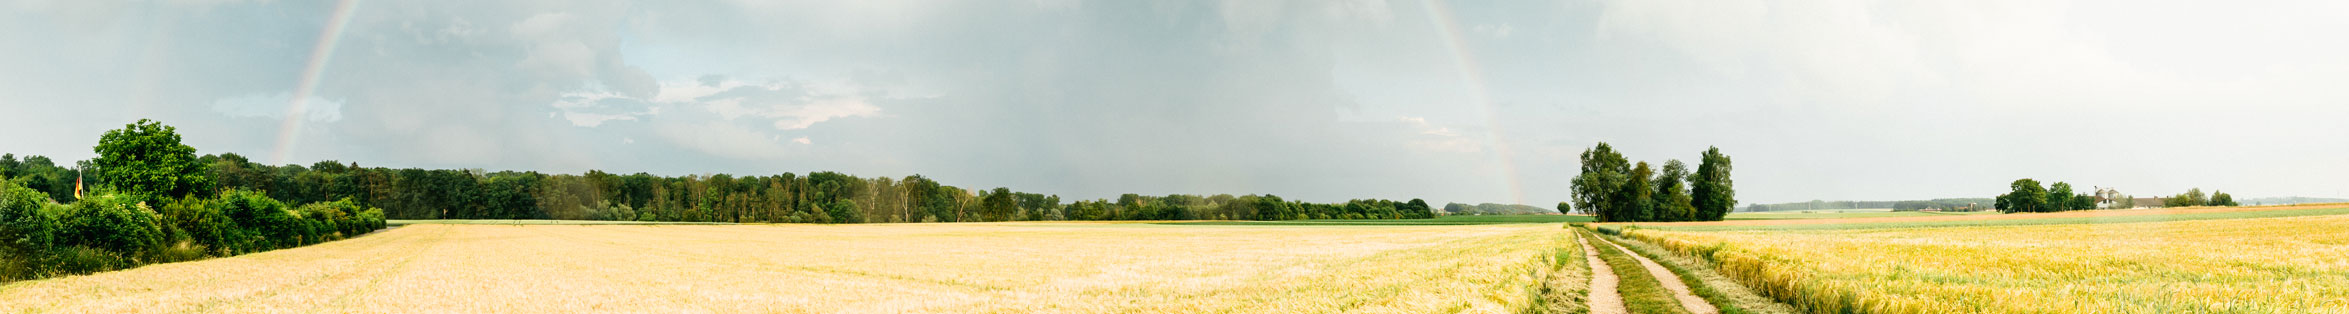 Wheat field and rainbow. #2881, regionale-fotobank.de